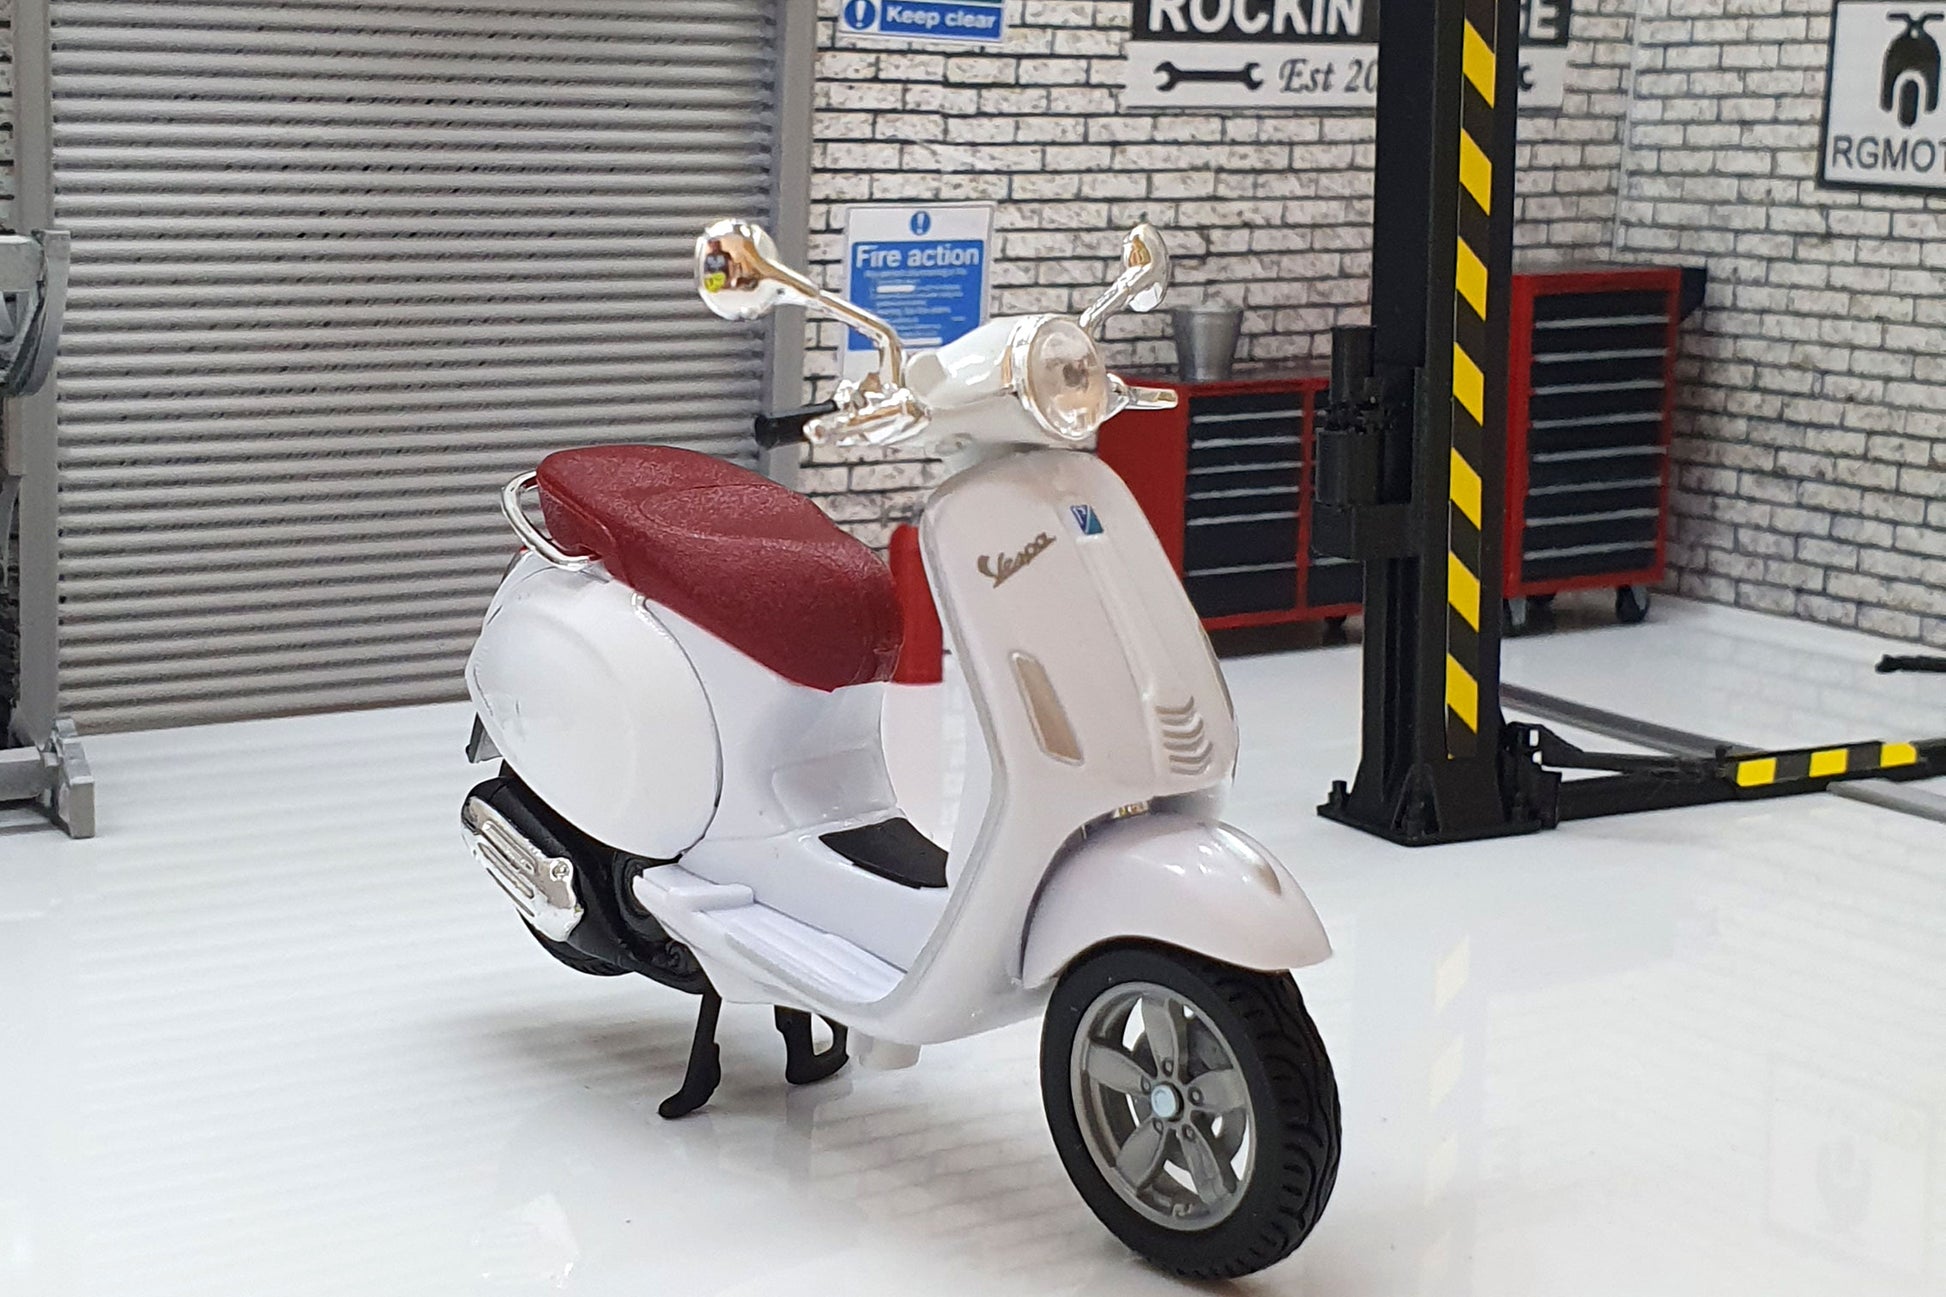 Vespa Primavera 150 2014 White 1:18 Scale Scooter – RGMOTO